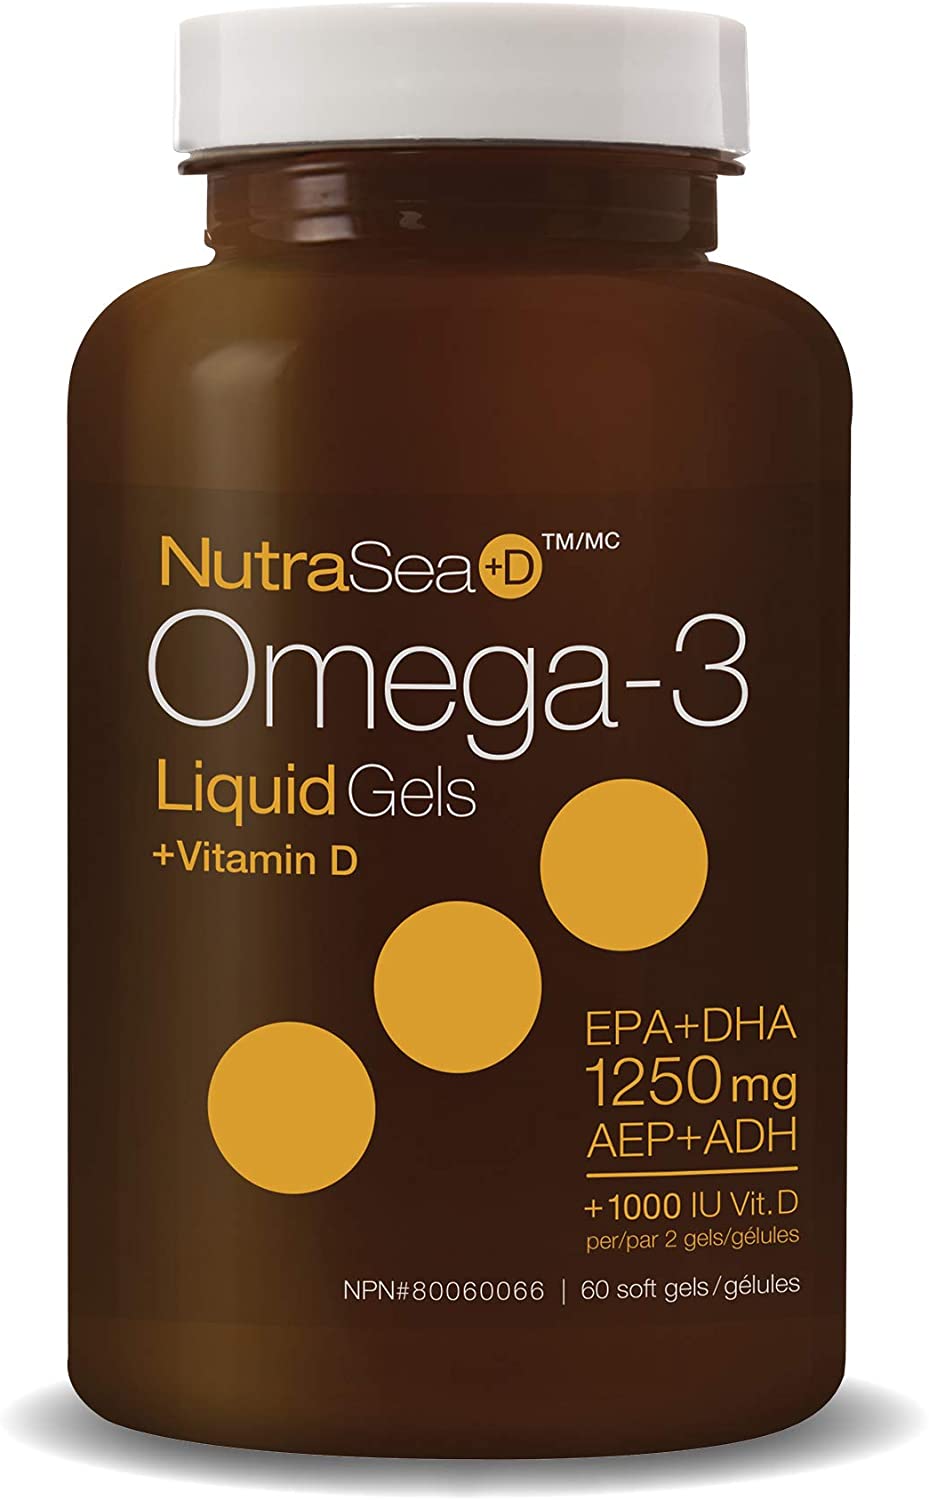 Omega-3 + Vitamin D Liquid Gels 60 / Fresh Mint